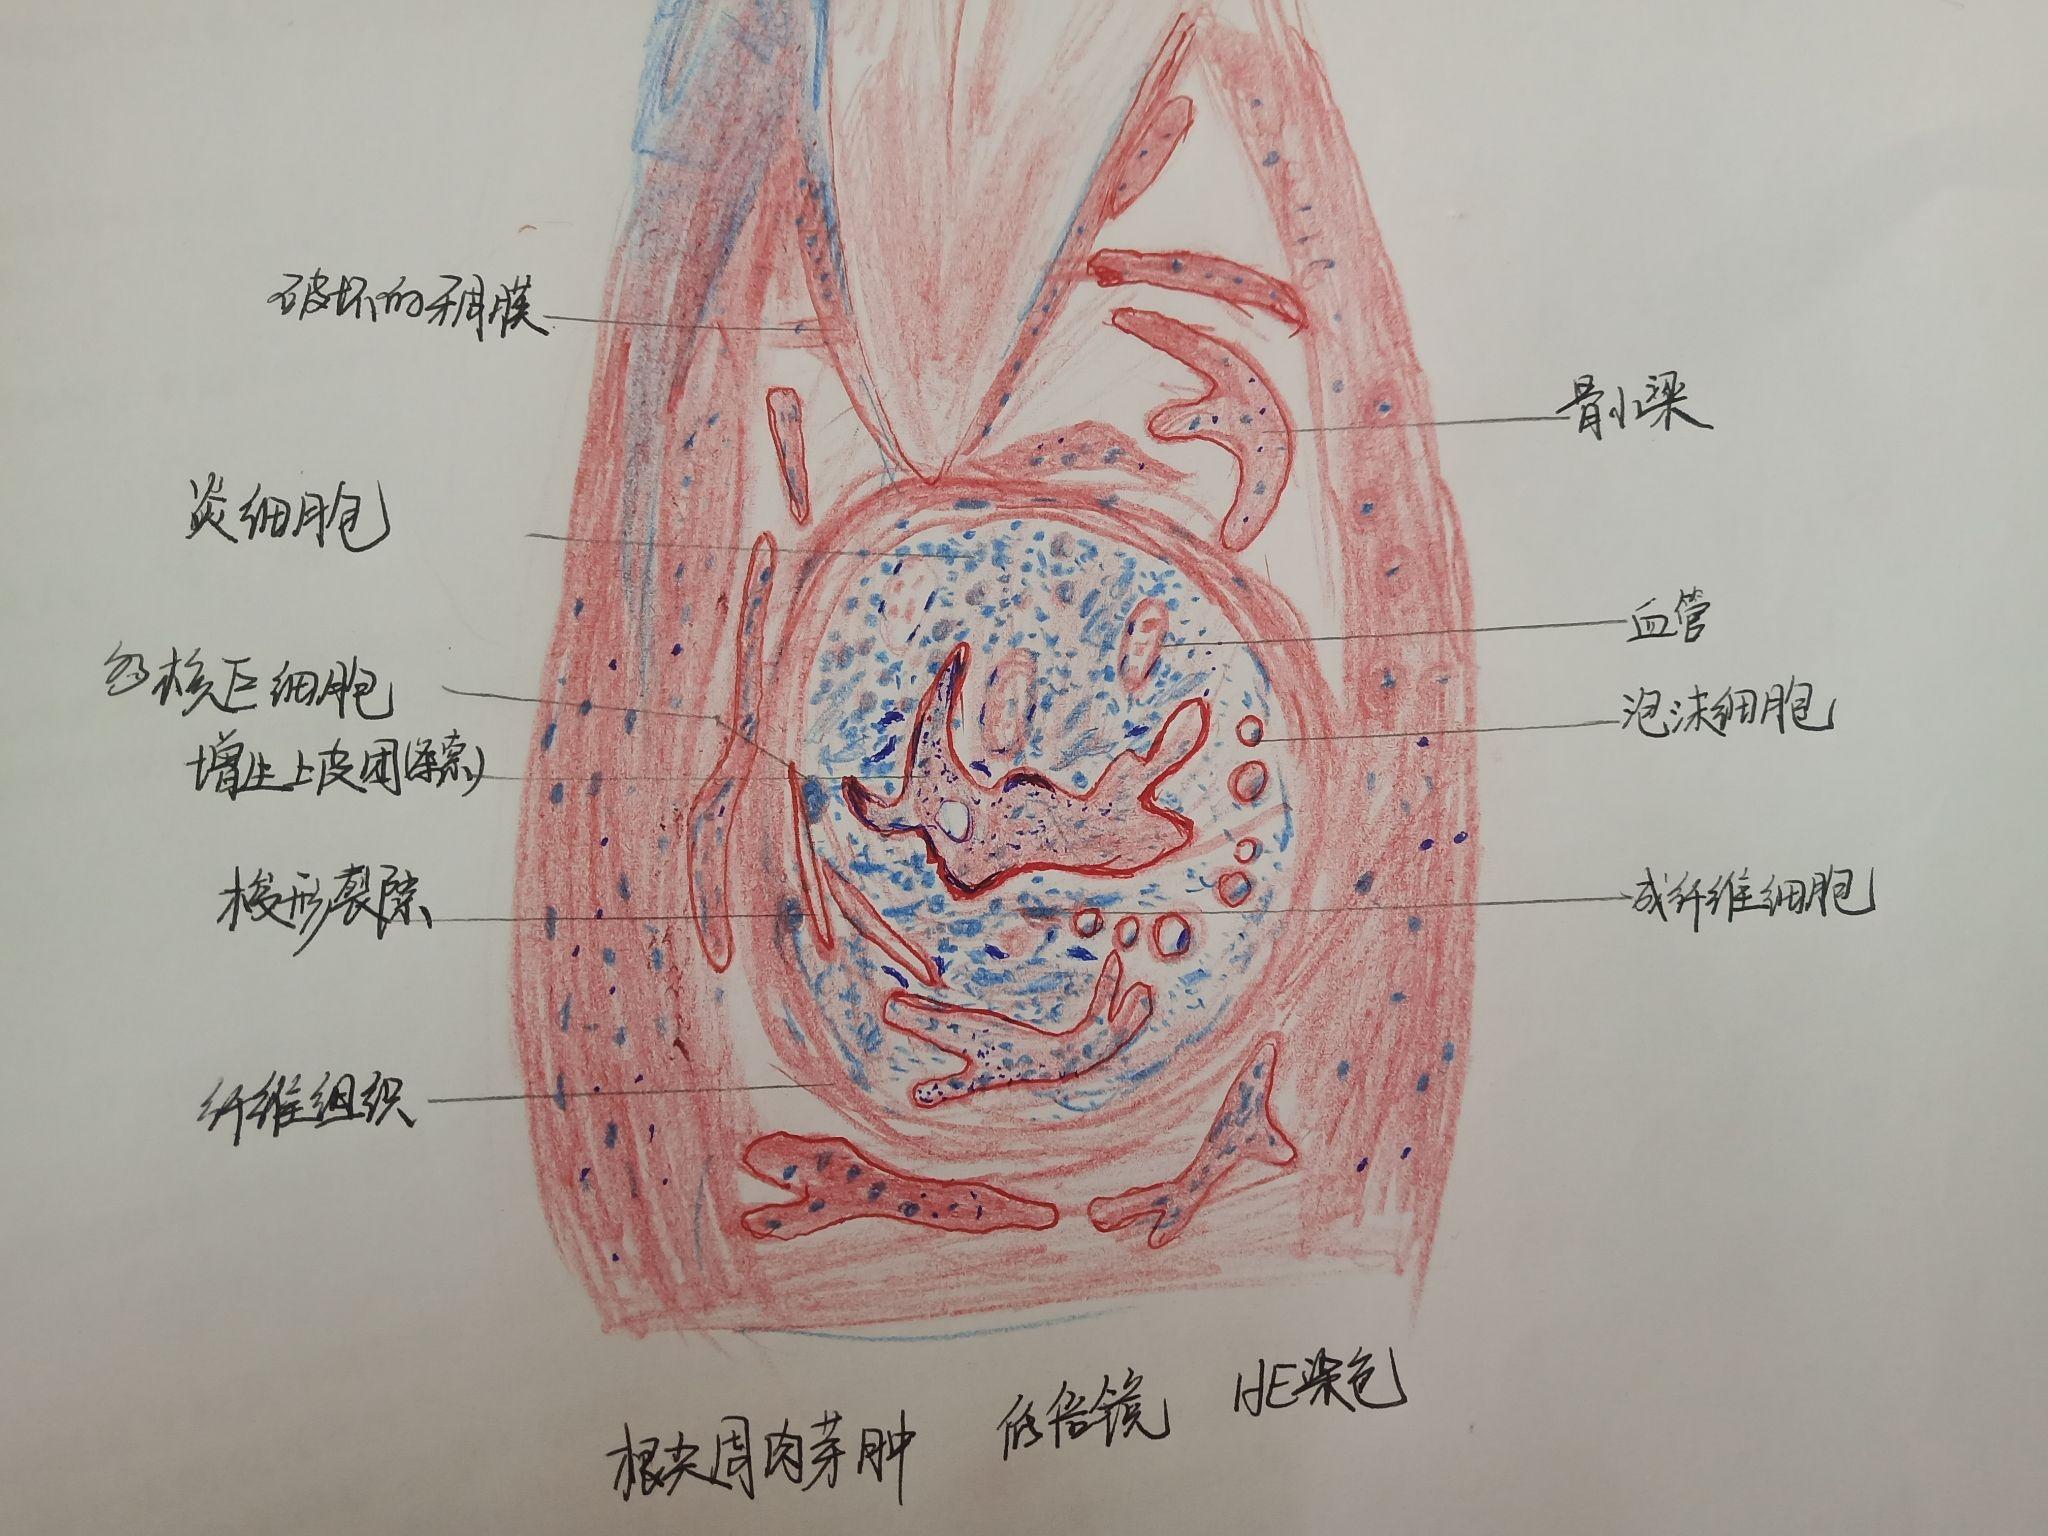 口腔组织病理学红蓝铅笔绘图 